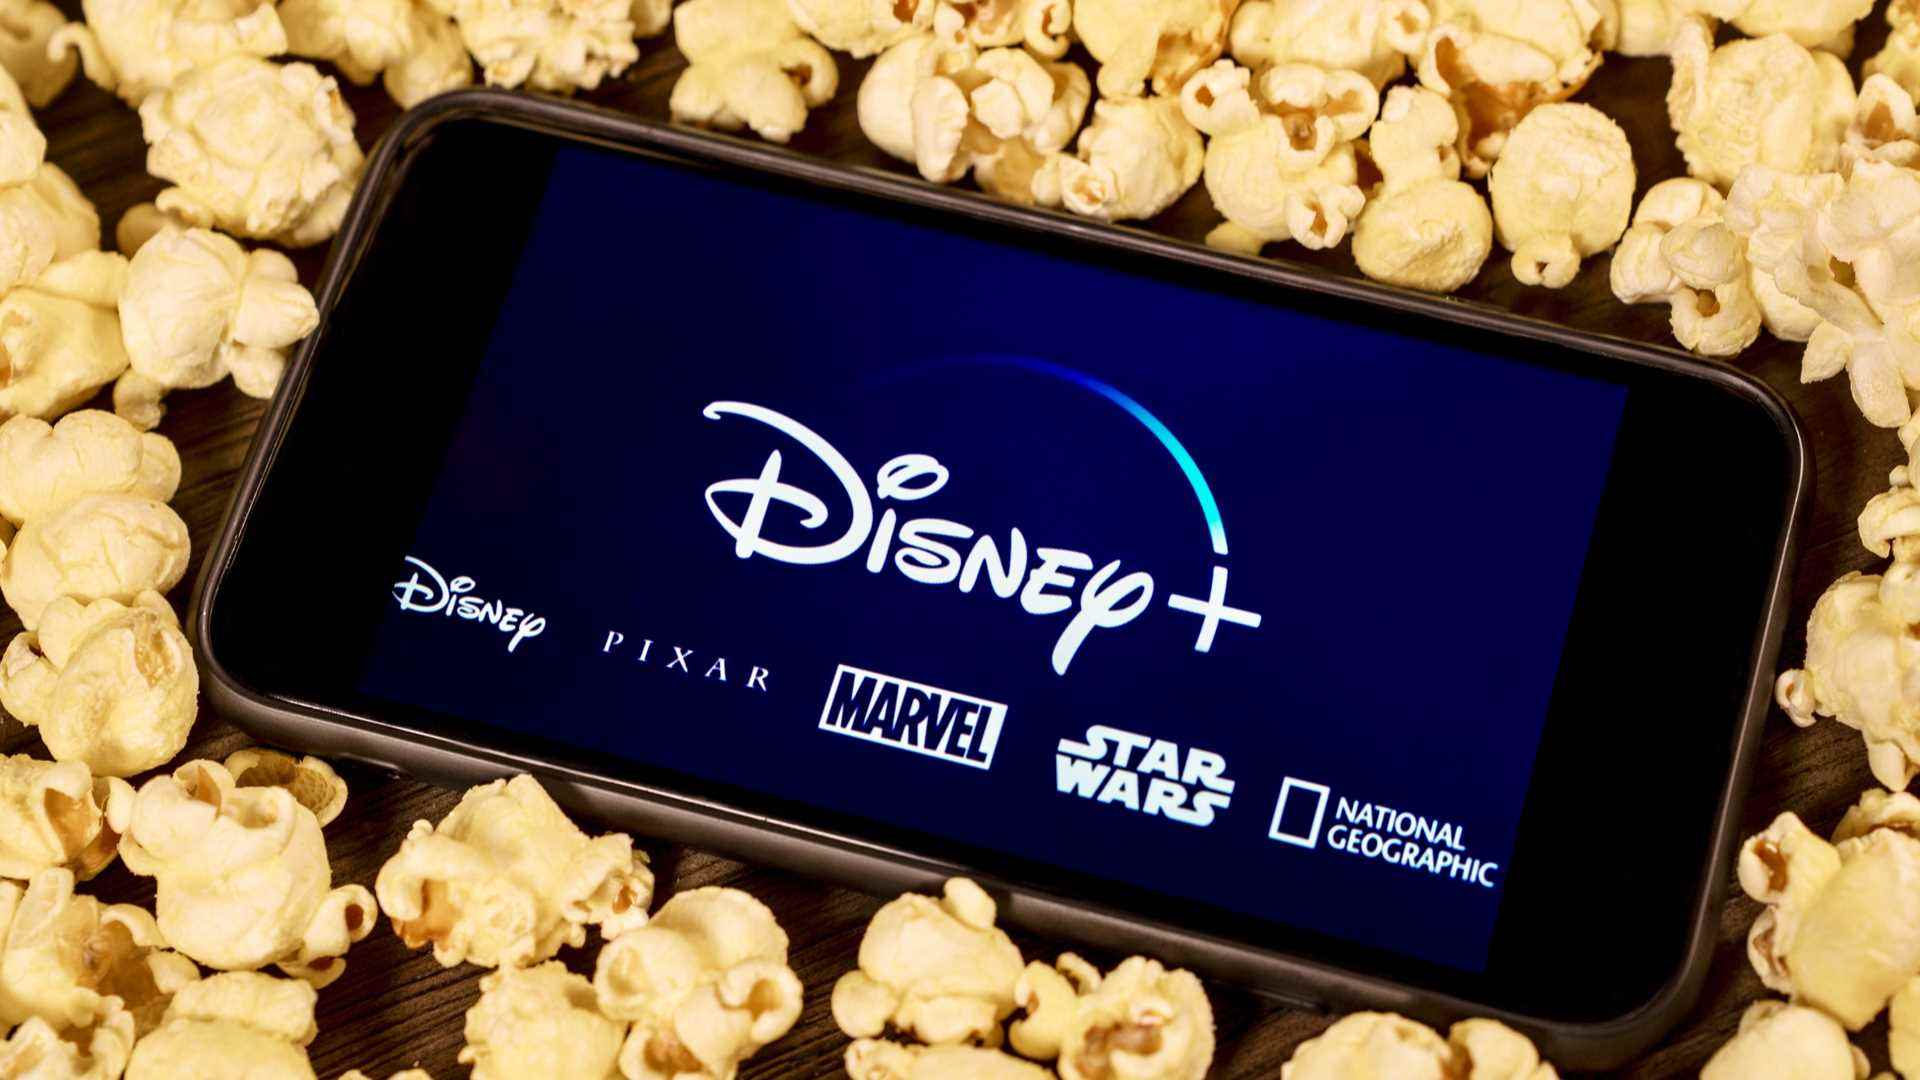 Patlamış mısırla çevrili Disney Plus yüklü bir cep telefonunun görüntüsü